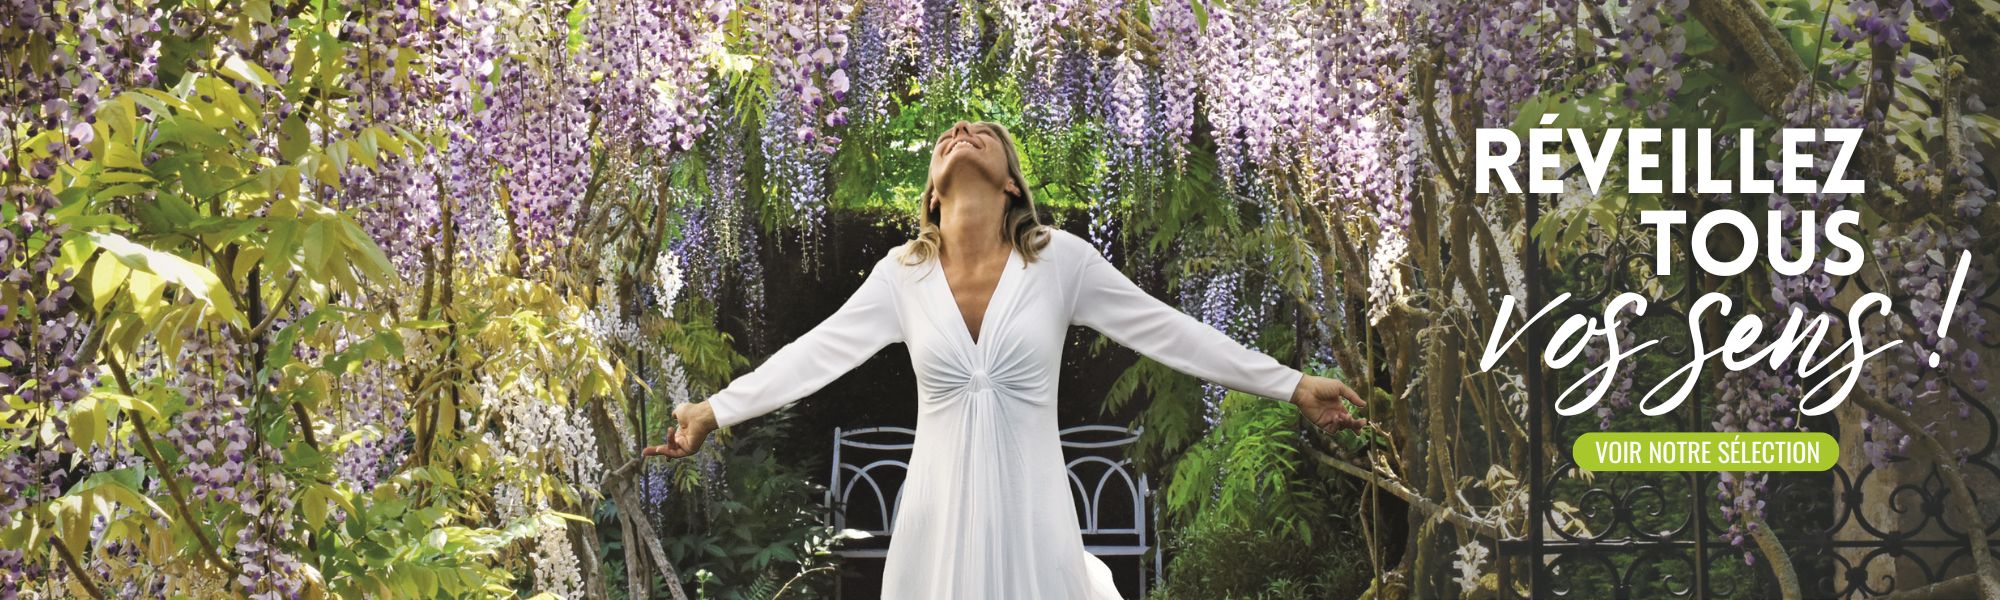 femme en blanc dans un jardin de glycine mauve